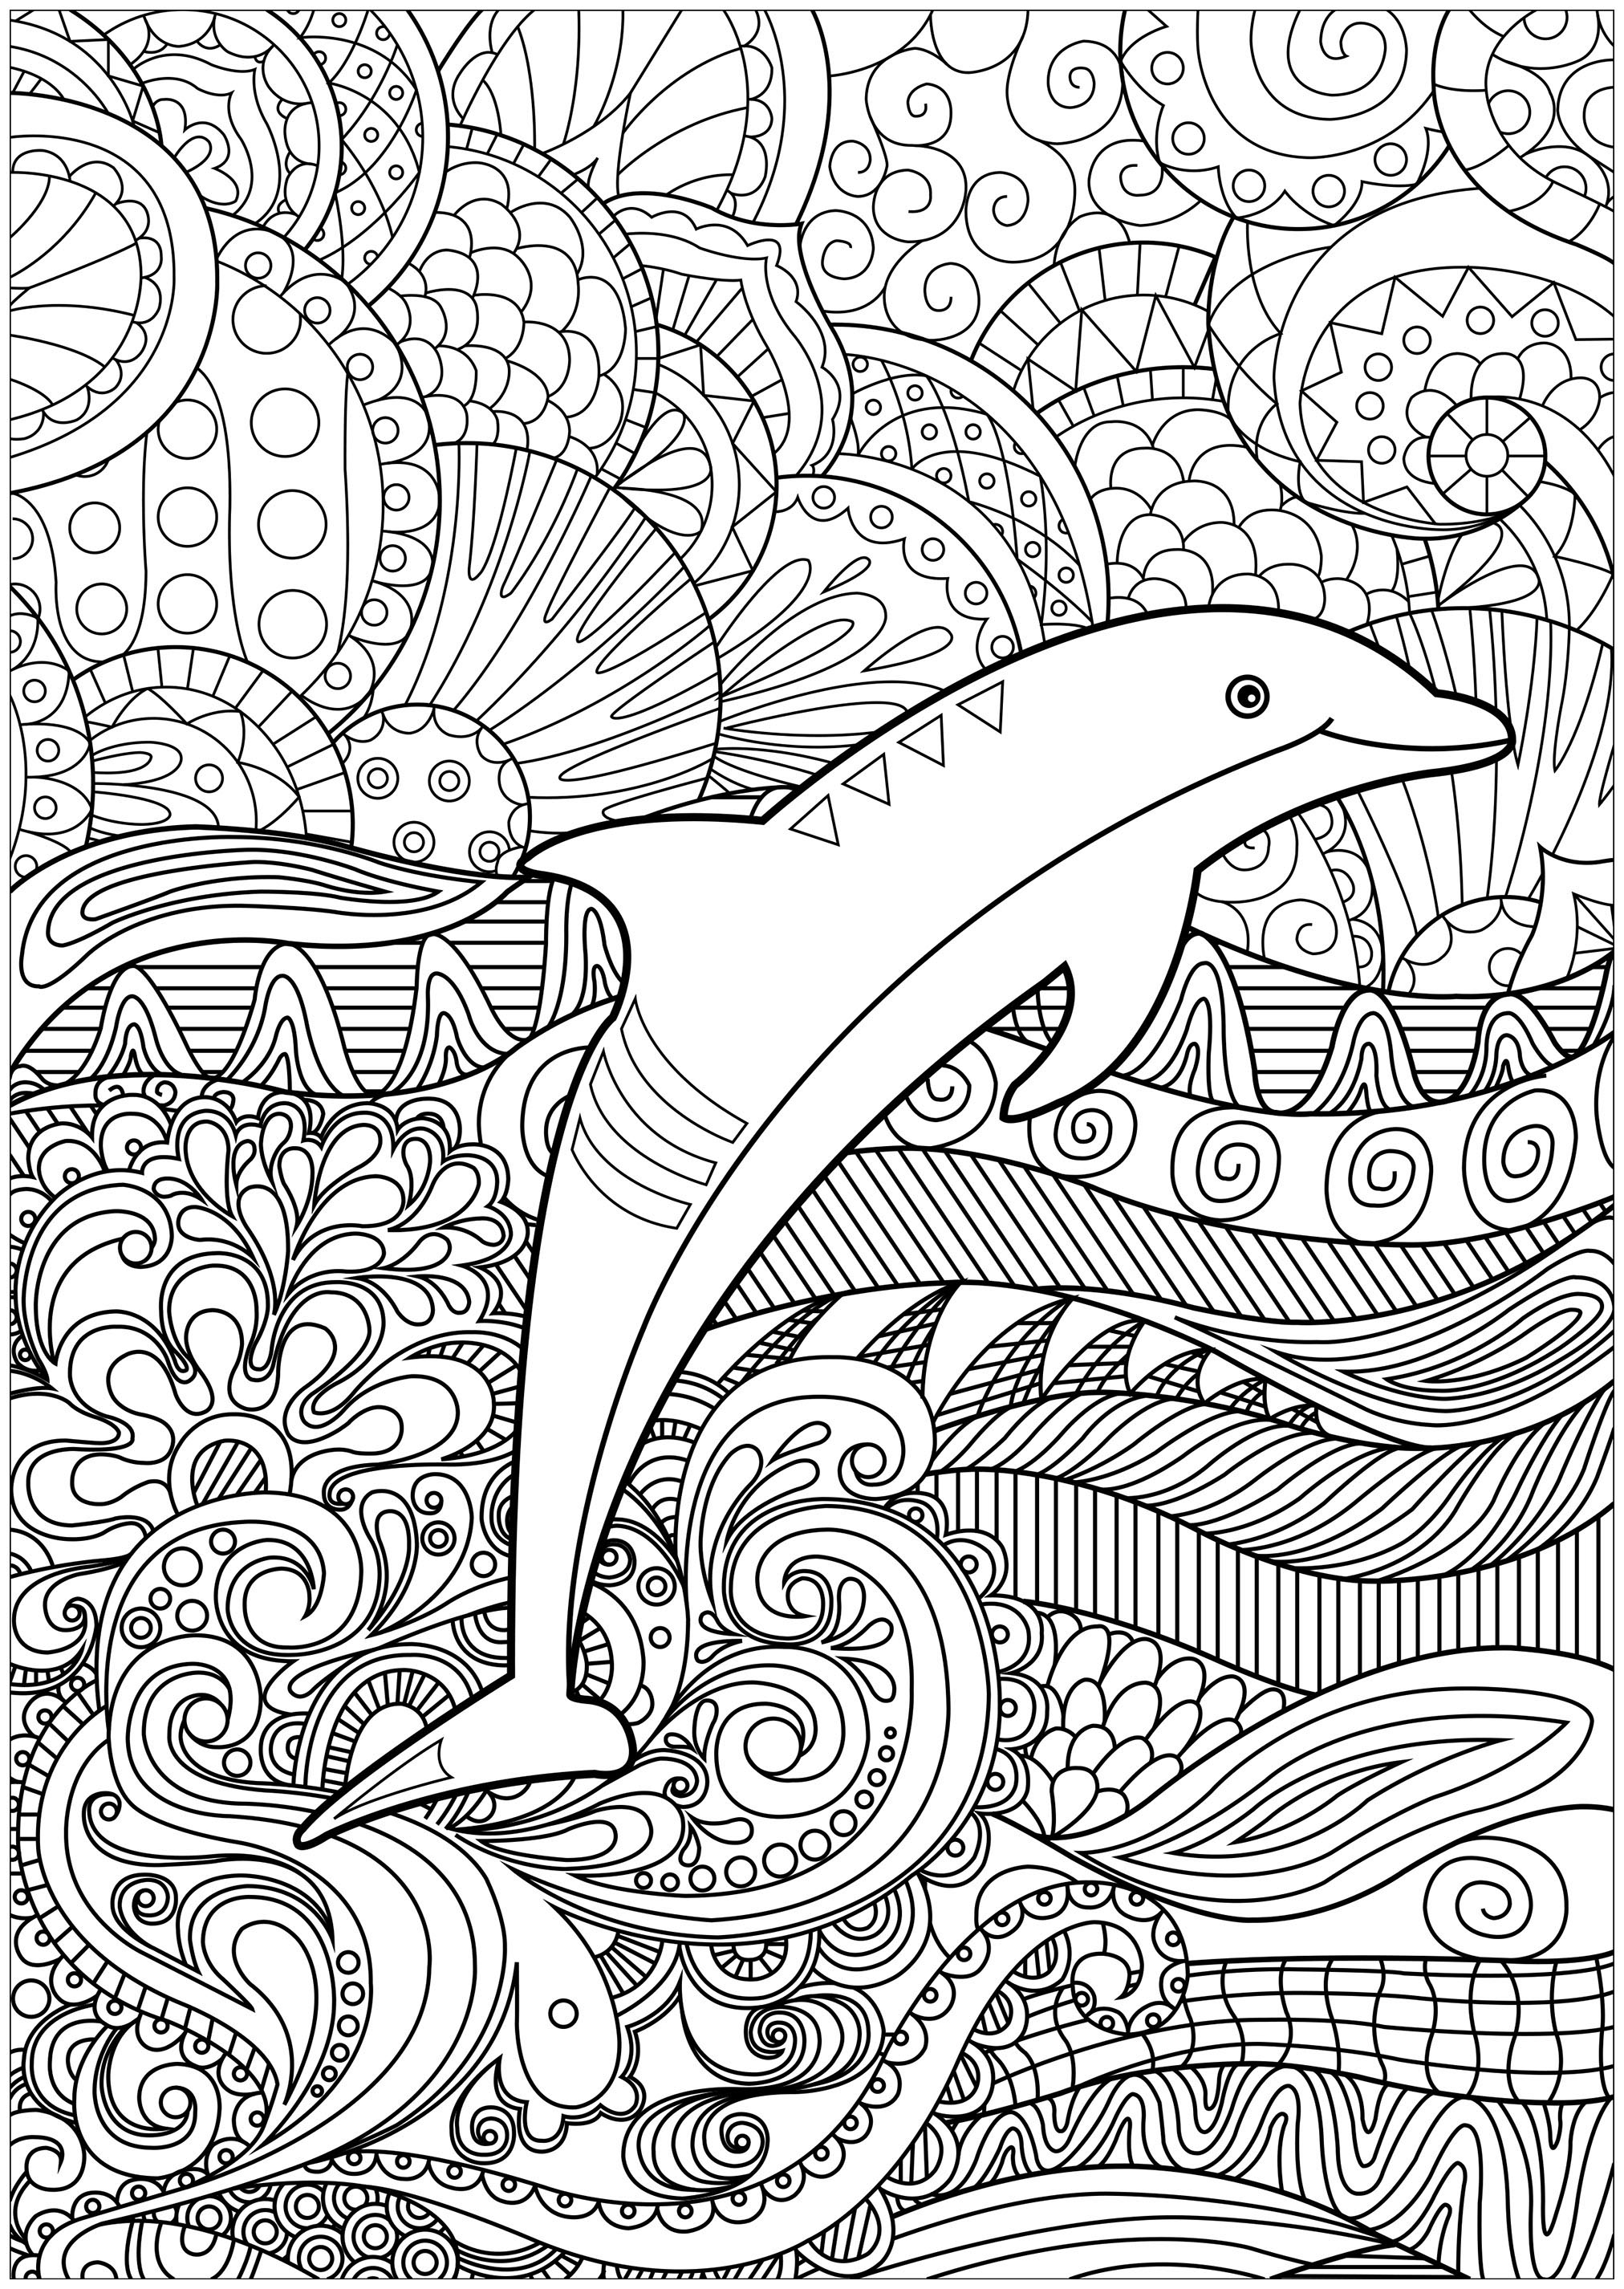 Colora os muitos pormenores do mar em que se encontra este elegante golfinho